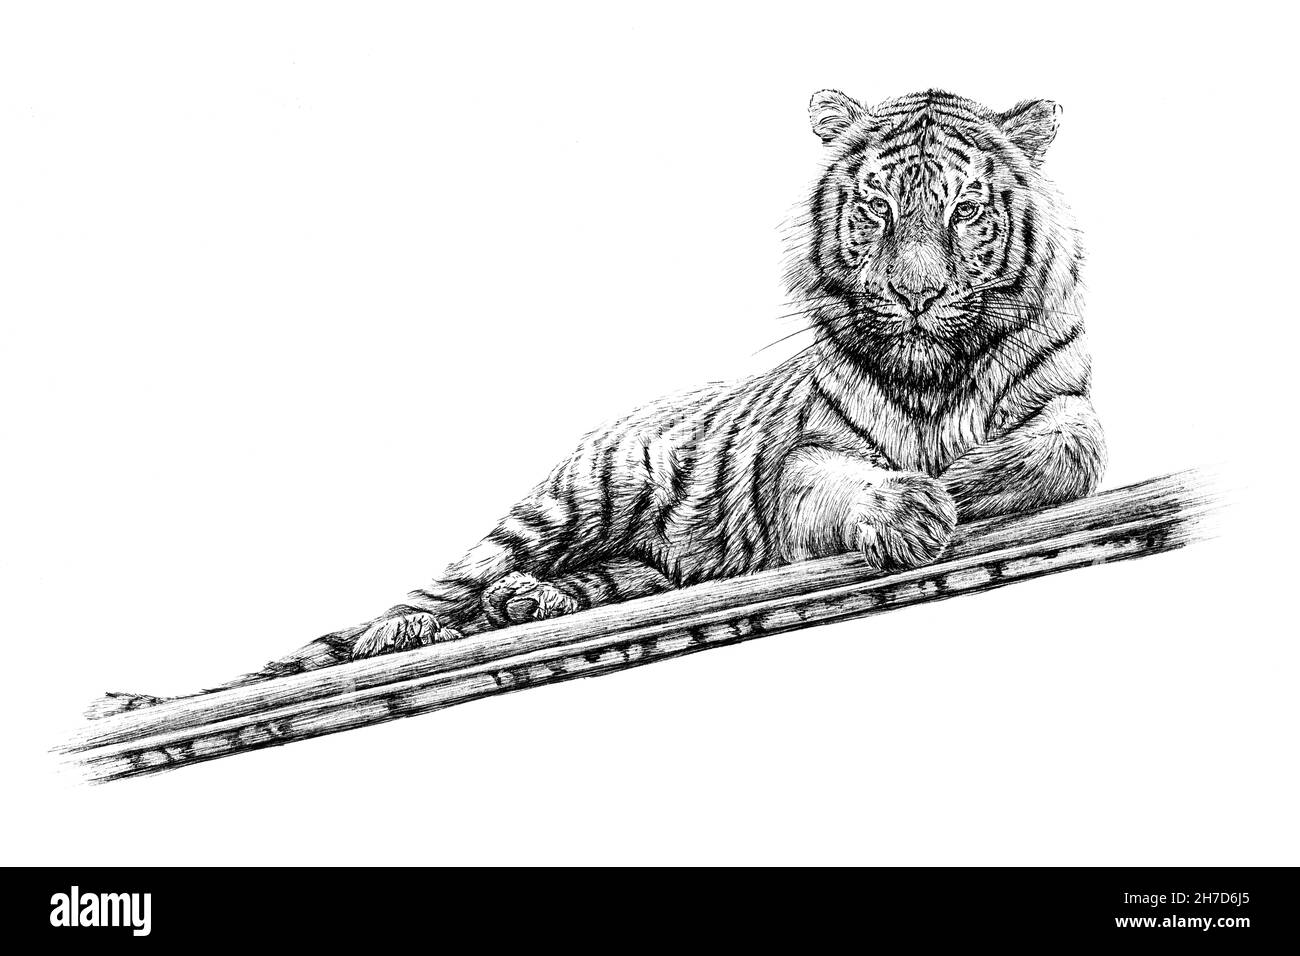 Discover 213+ tiger sketch best